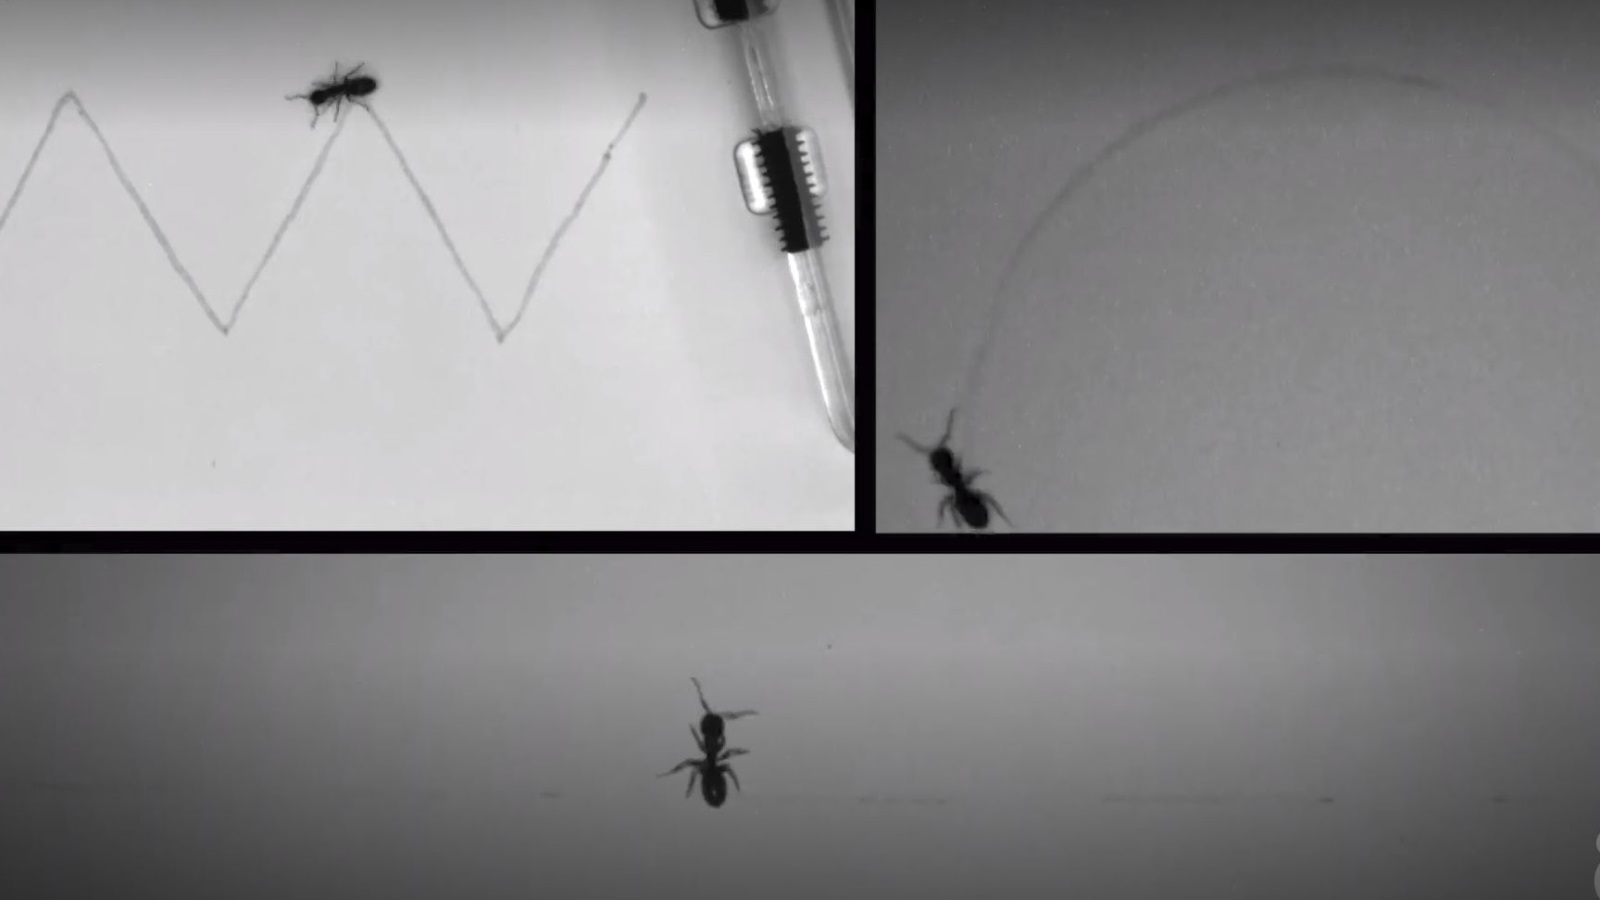 الإشارات الكيميائية (الفيرمونات) تتيح للنمل تتبع المسارات على اختلاف أشكالها (نيويورك تايمز)تتيح 